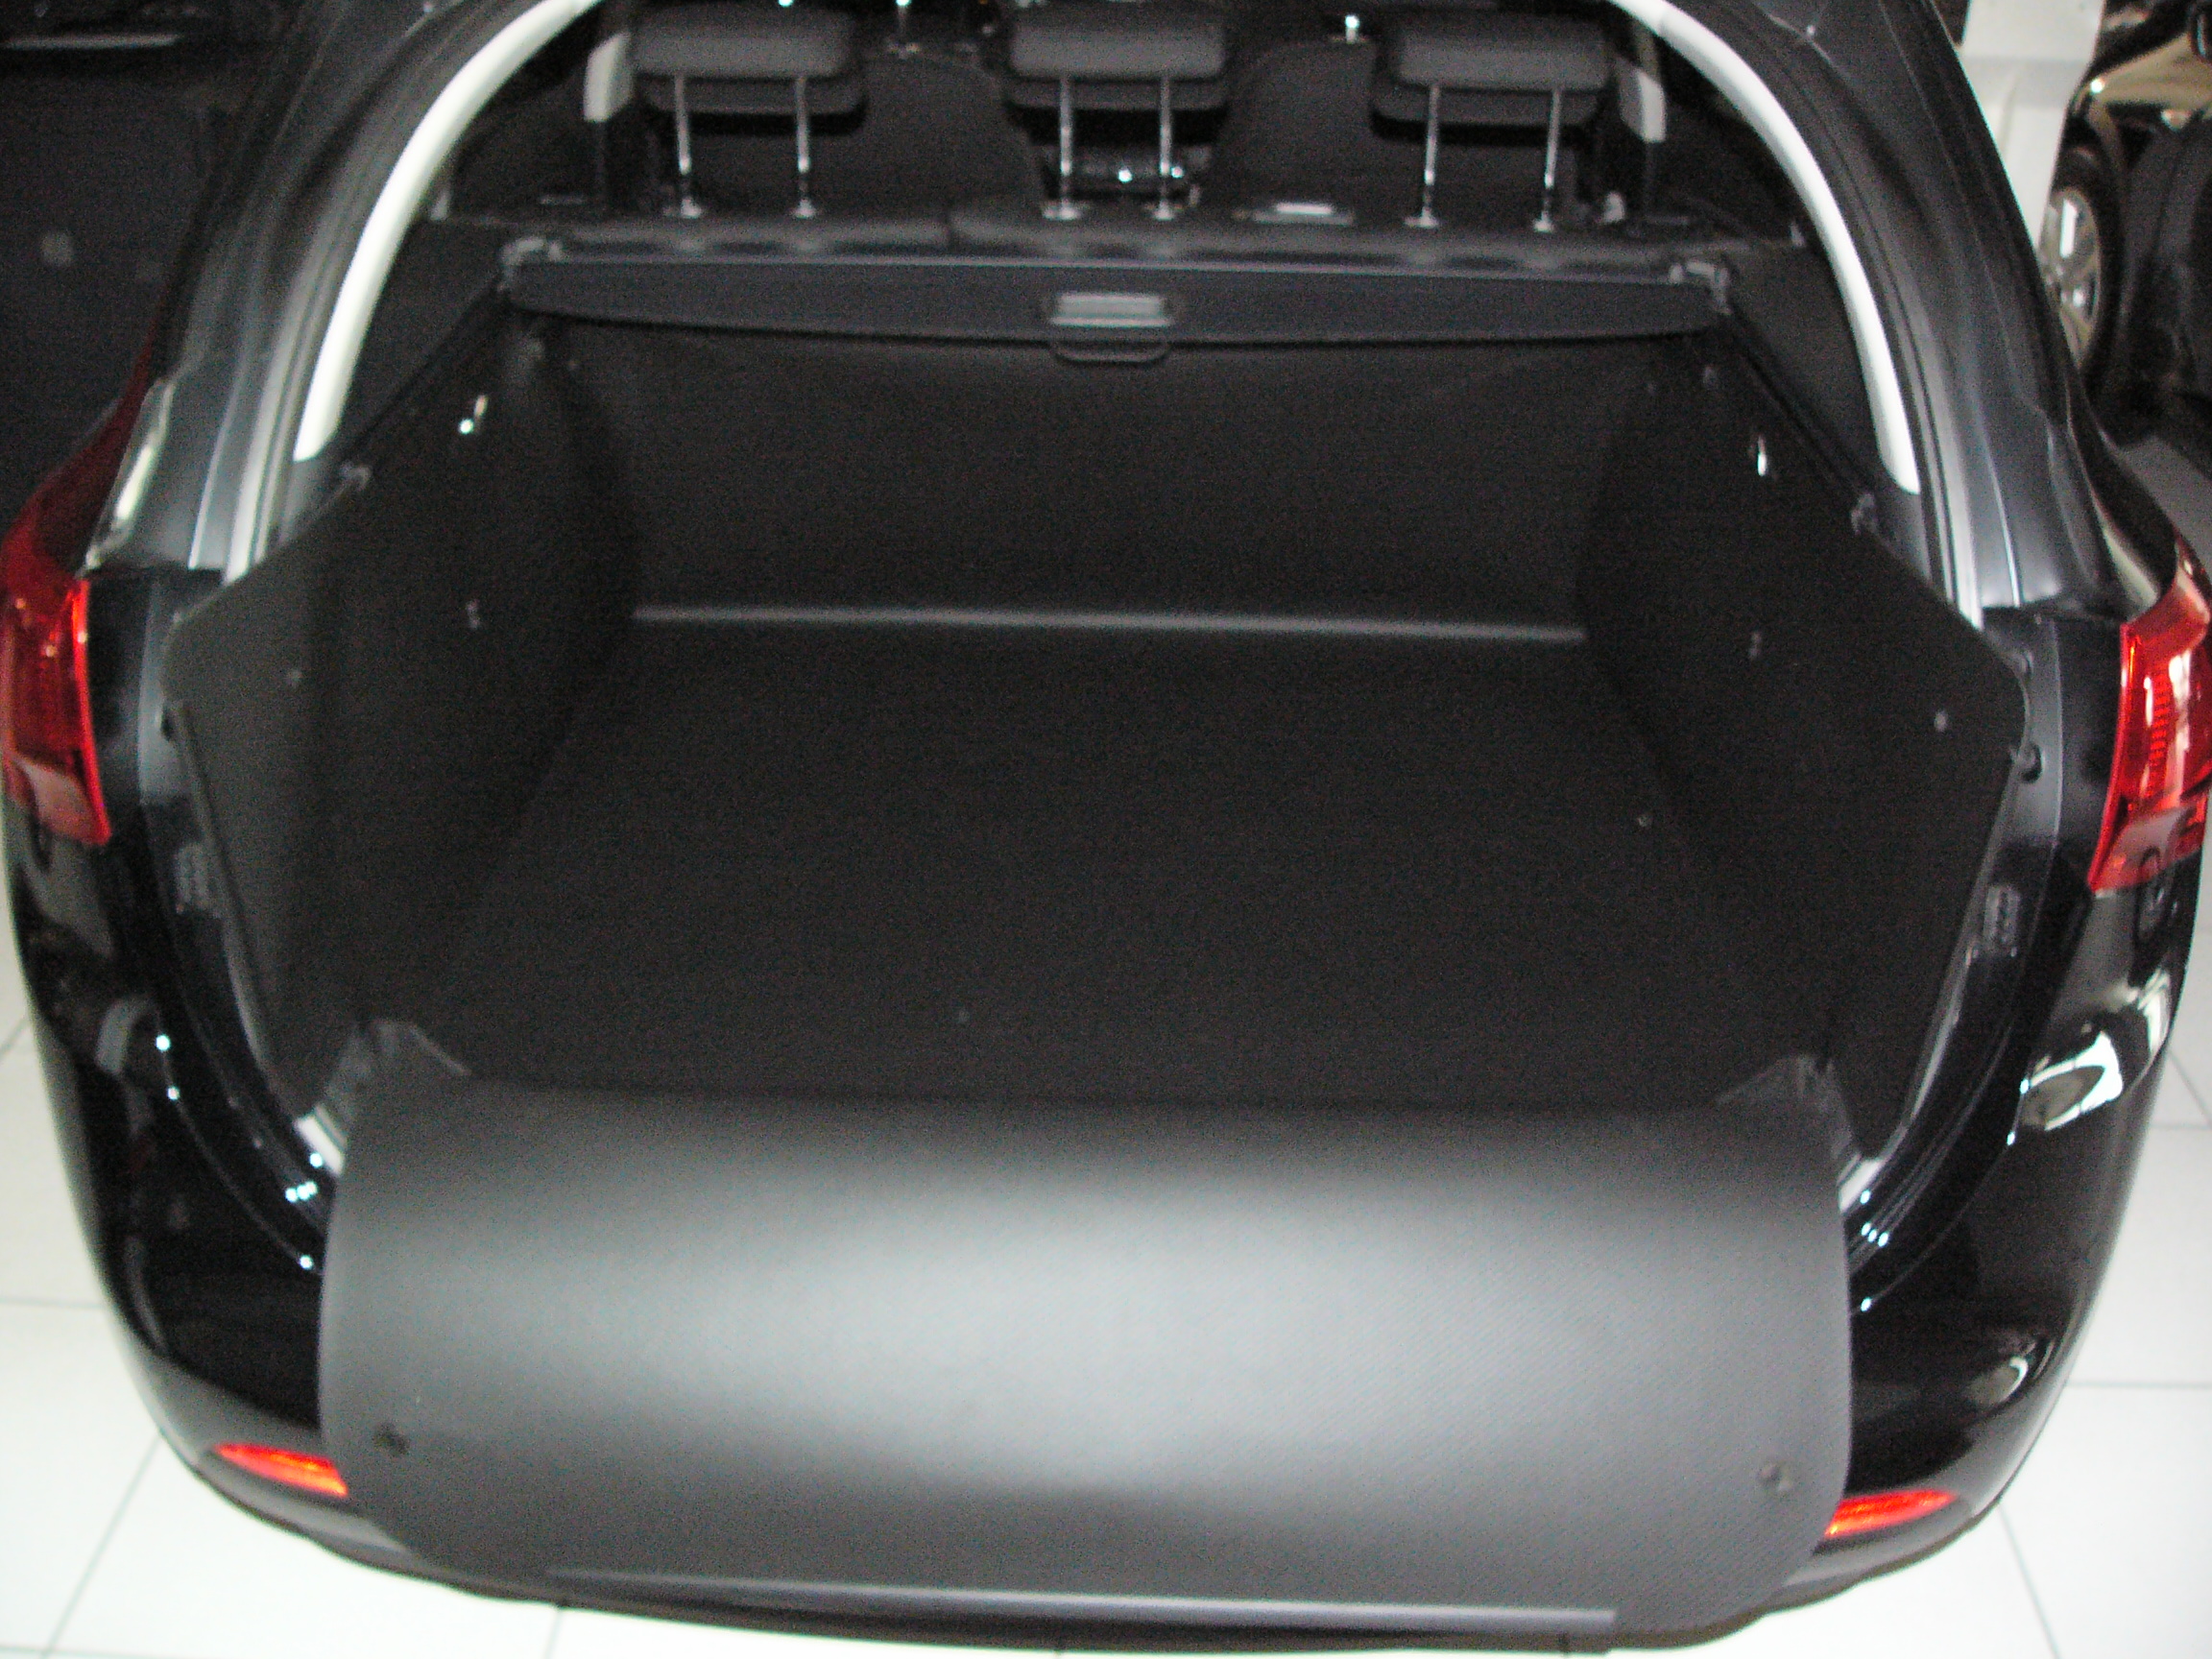 Der hohe Kofferraumschutz für Kia Schmutz, und Kofferraumwanne sw, Beschädigung Ceeds Nässe gegen passgenaue